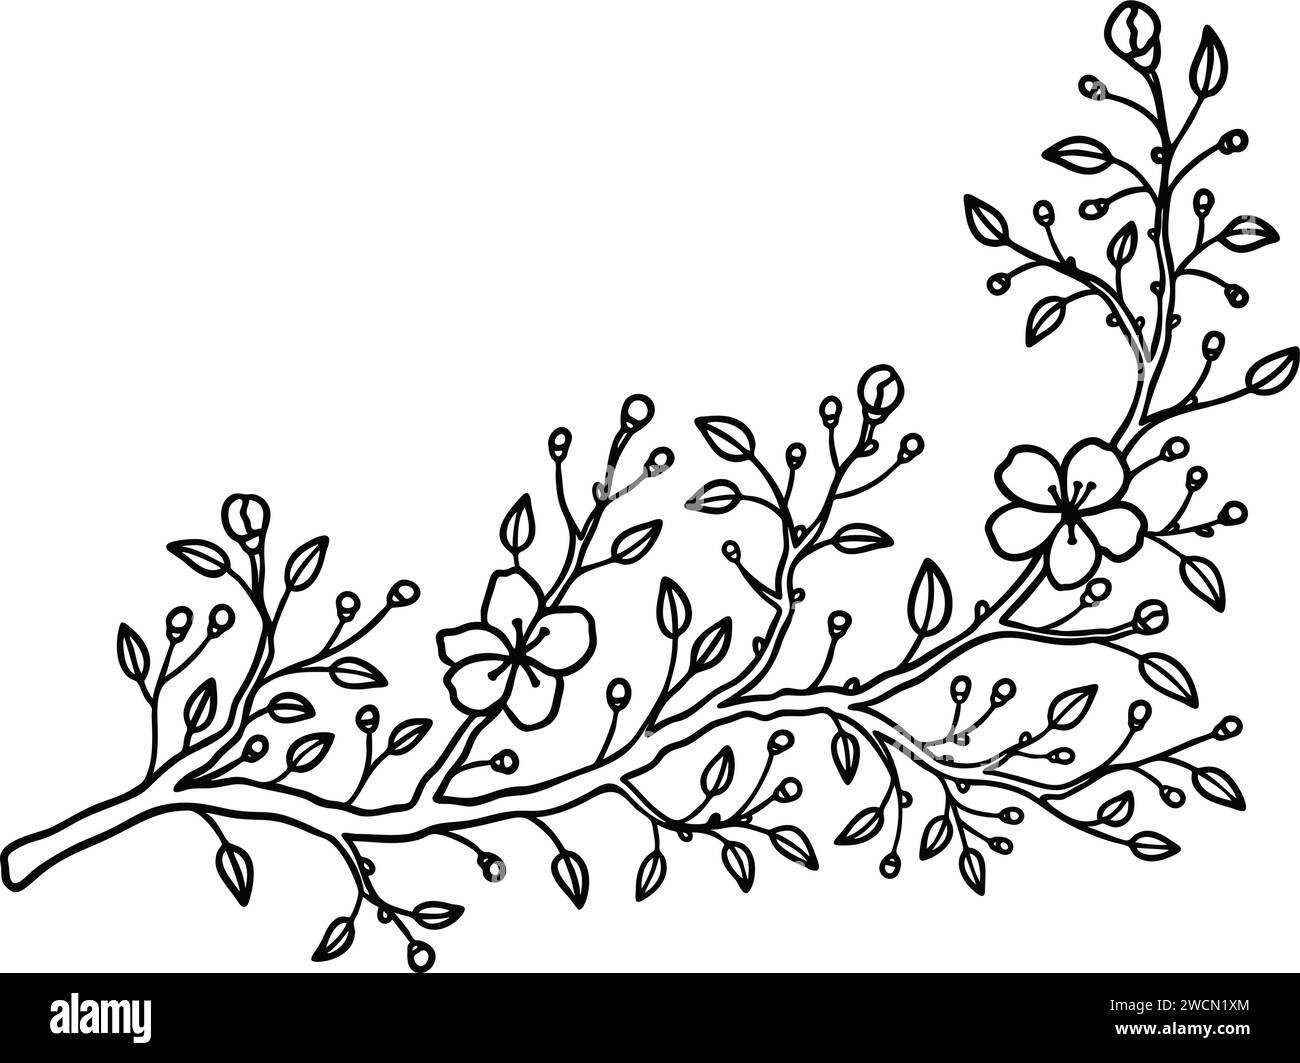 Cerise, sakura, amande, pomme, fleur de printemps prunier dans le style d'art en ligne. Croquis de ranch de fleurs japonais. Esquissez une illustration simple dessinée à la main. Design ele Illustration de Vecteur